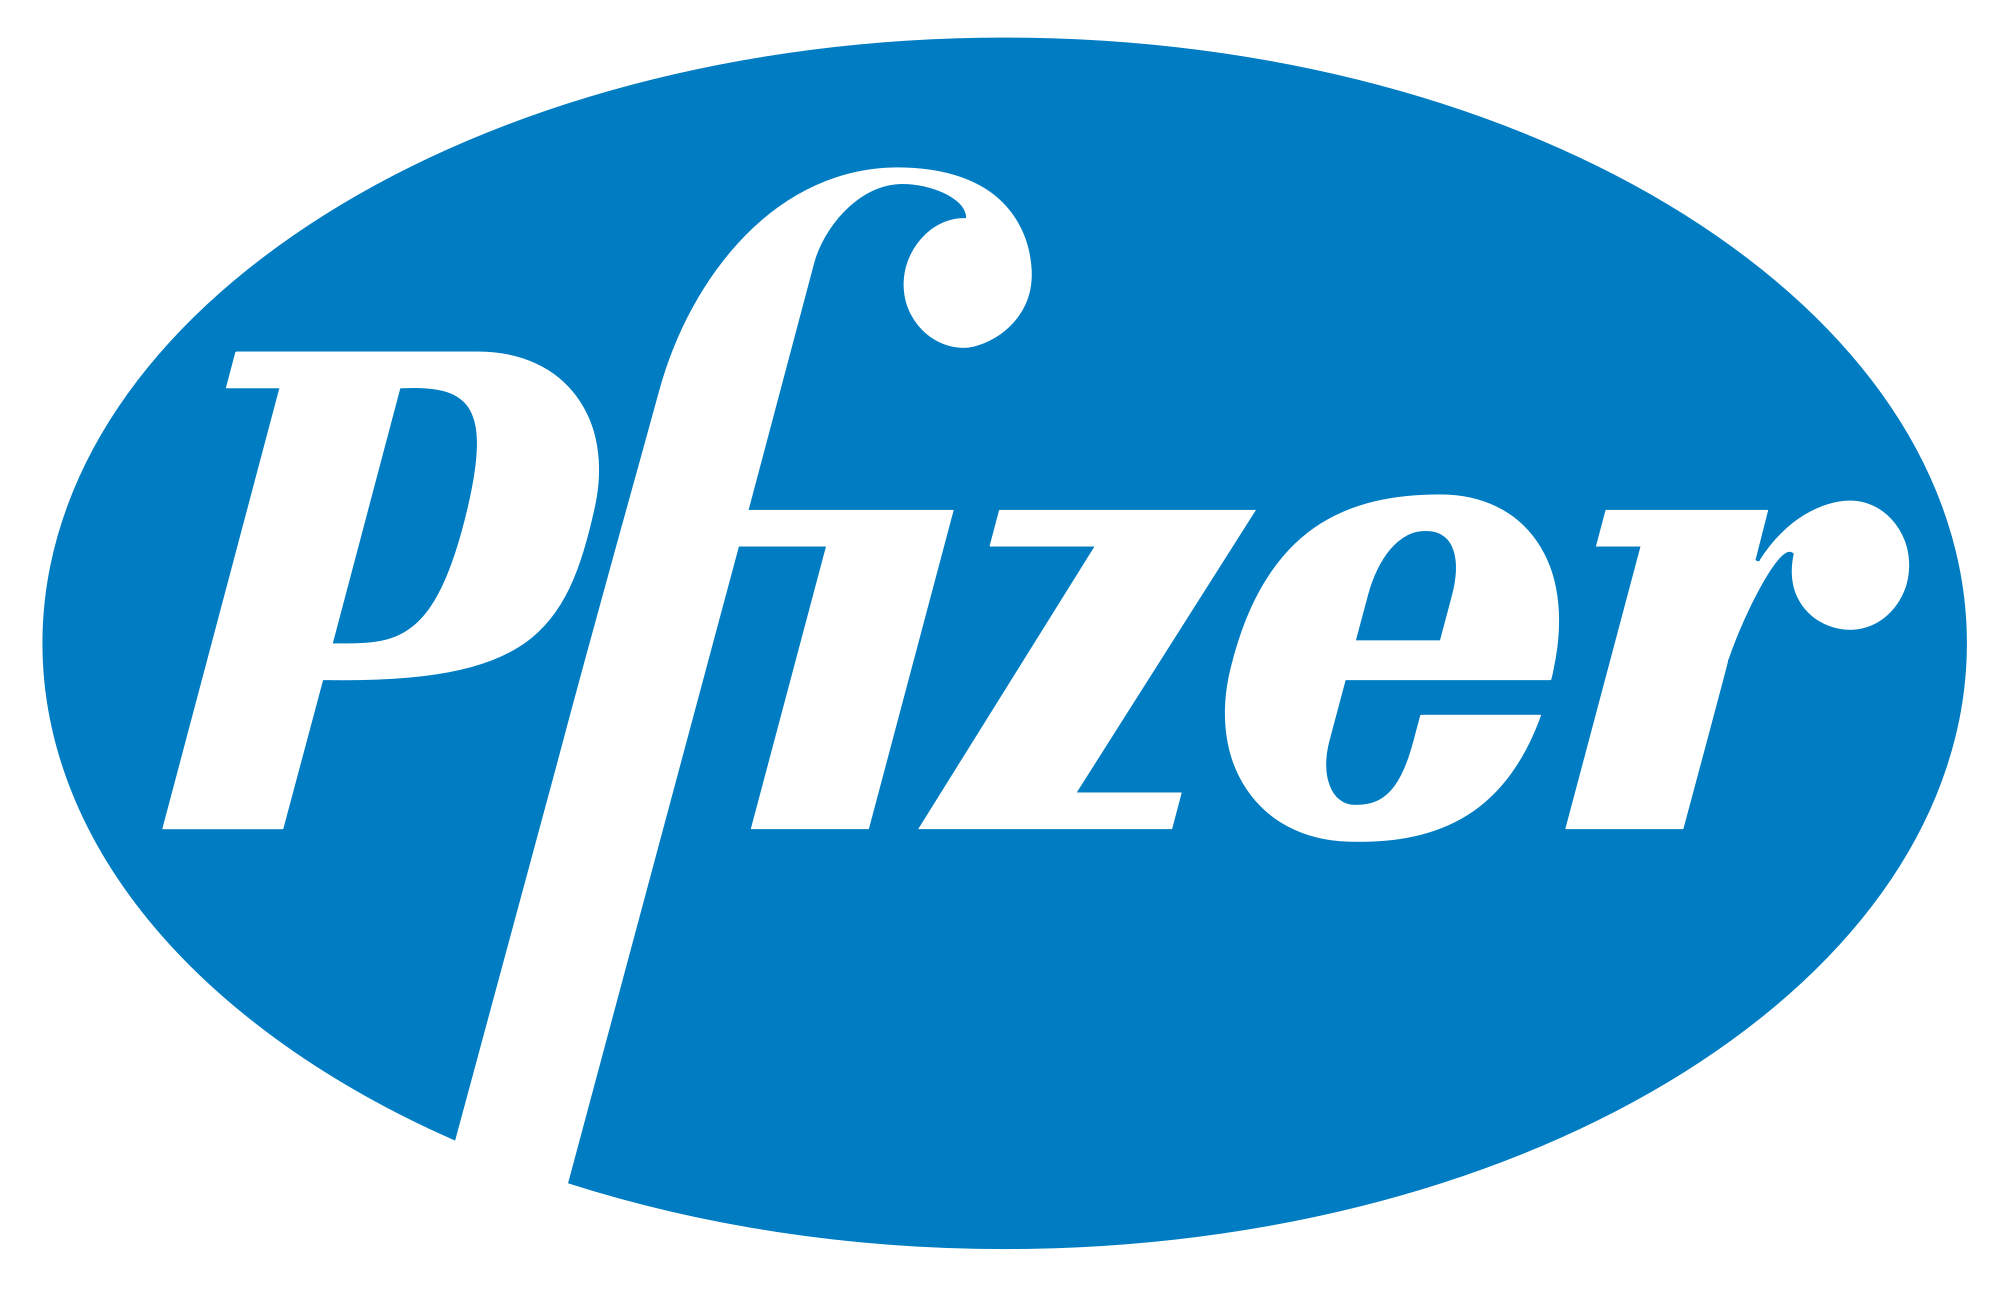 pfizer | Techlog.gr - Χρήσιμα νέα τεχνολογίας